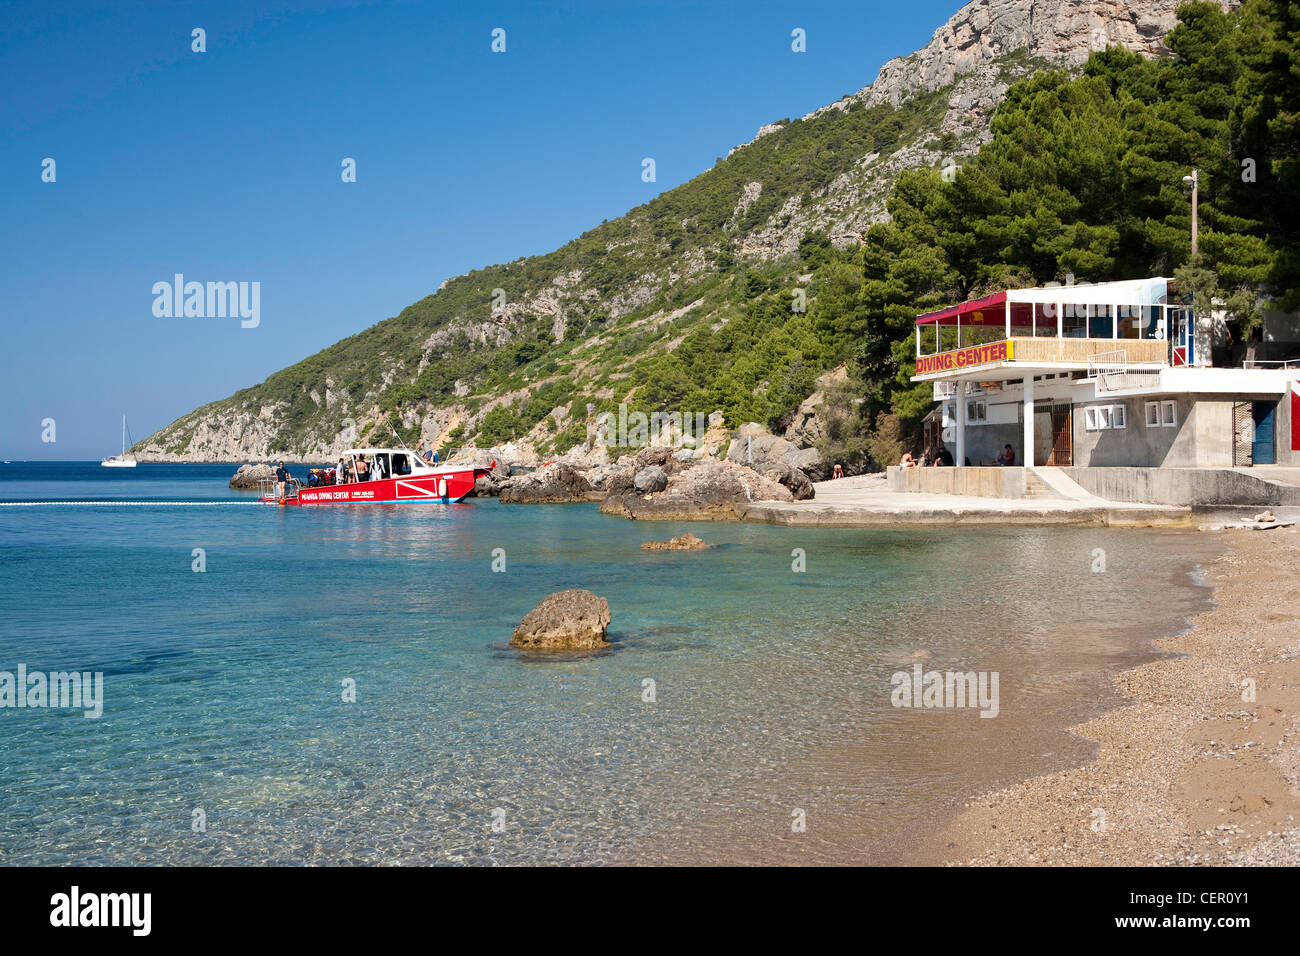 Tauchbasis in Komiza auf der Insel Vis, Adria, Kroatien Stockfoto